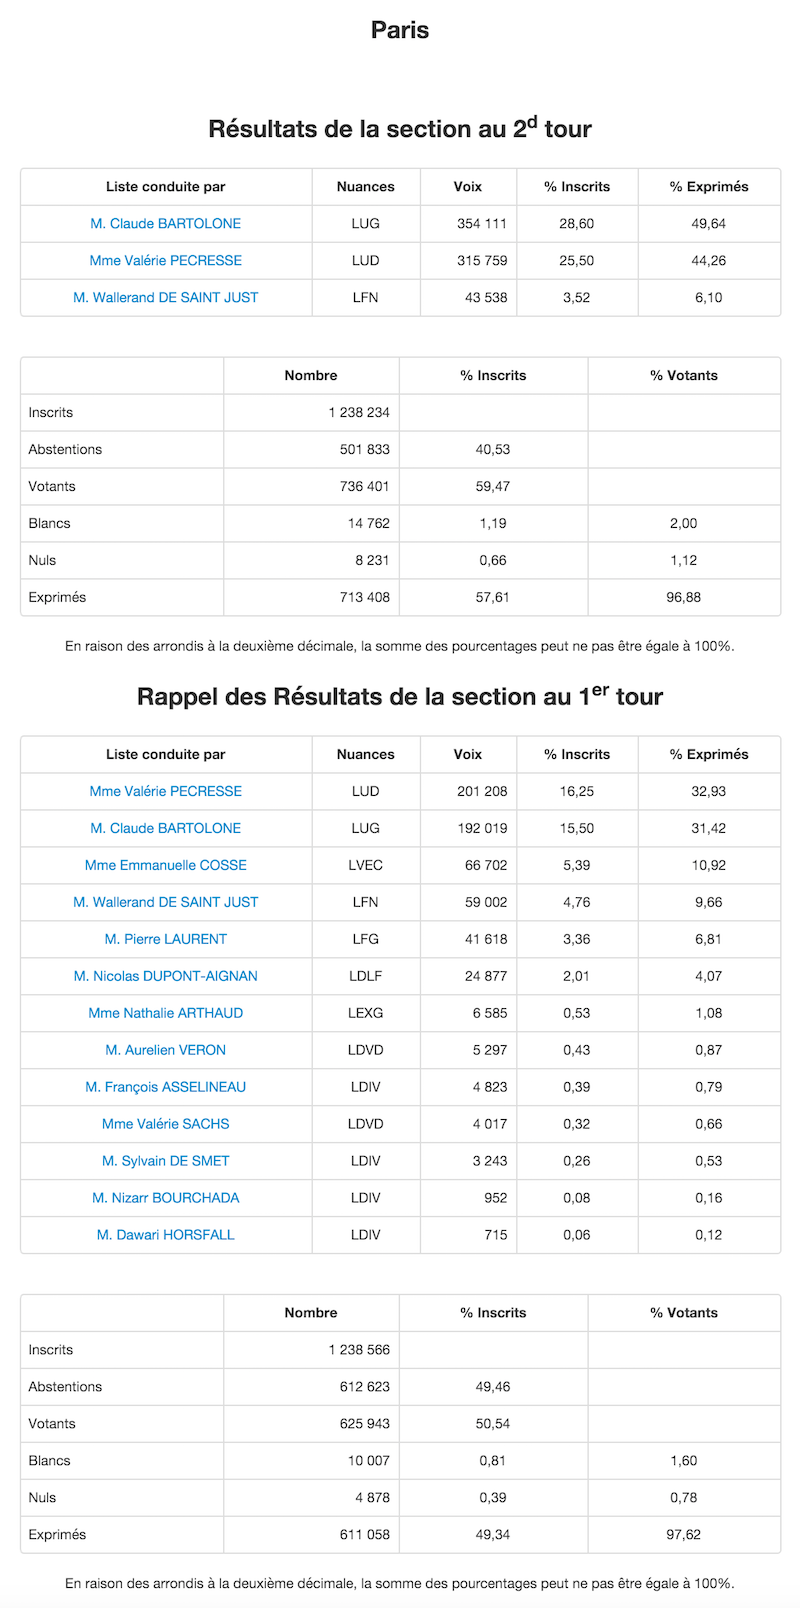 Régionales 2015 et 2010 dans le 15e arrondissement de Paris